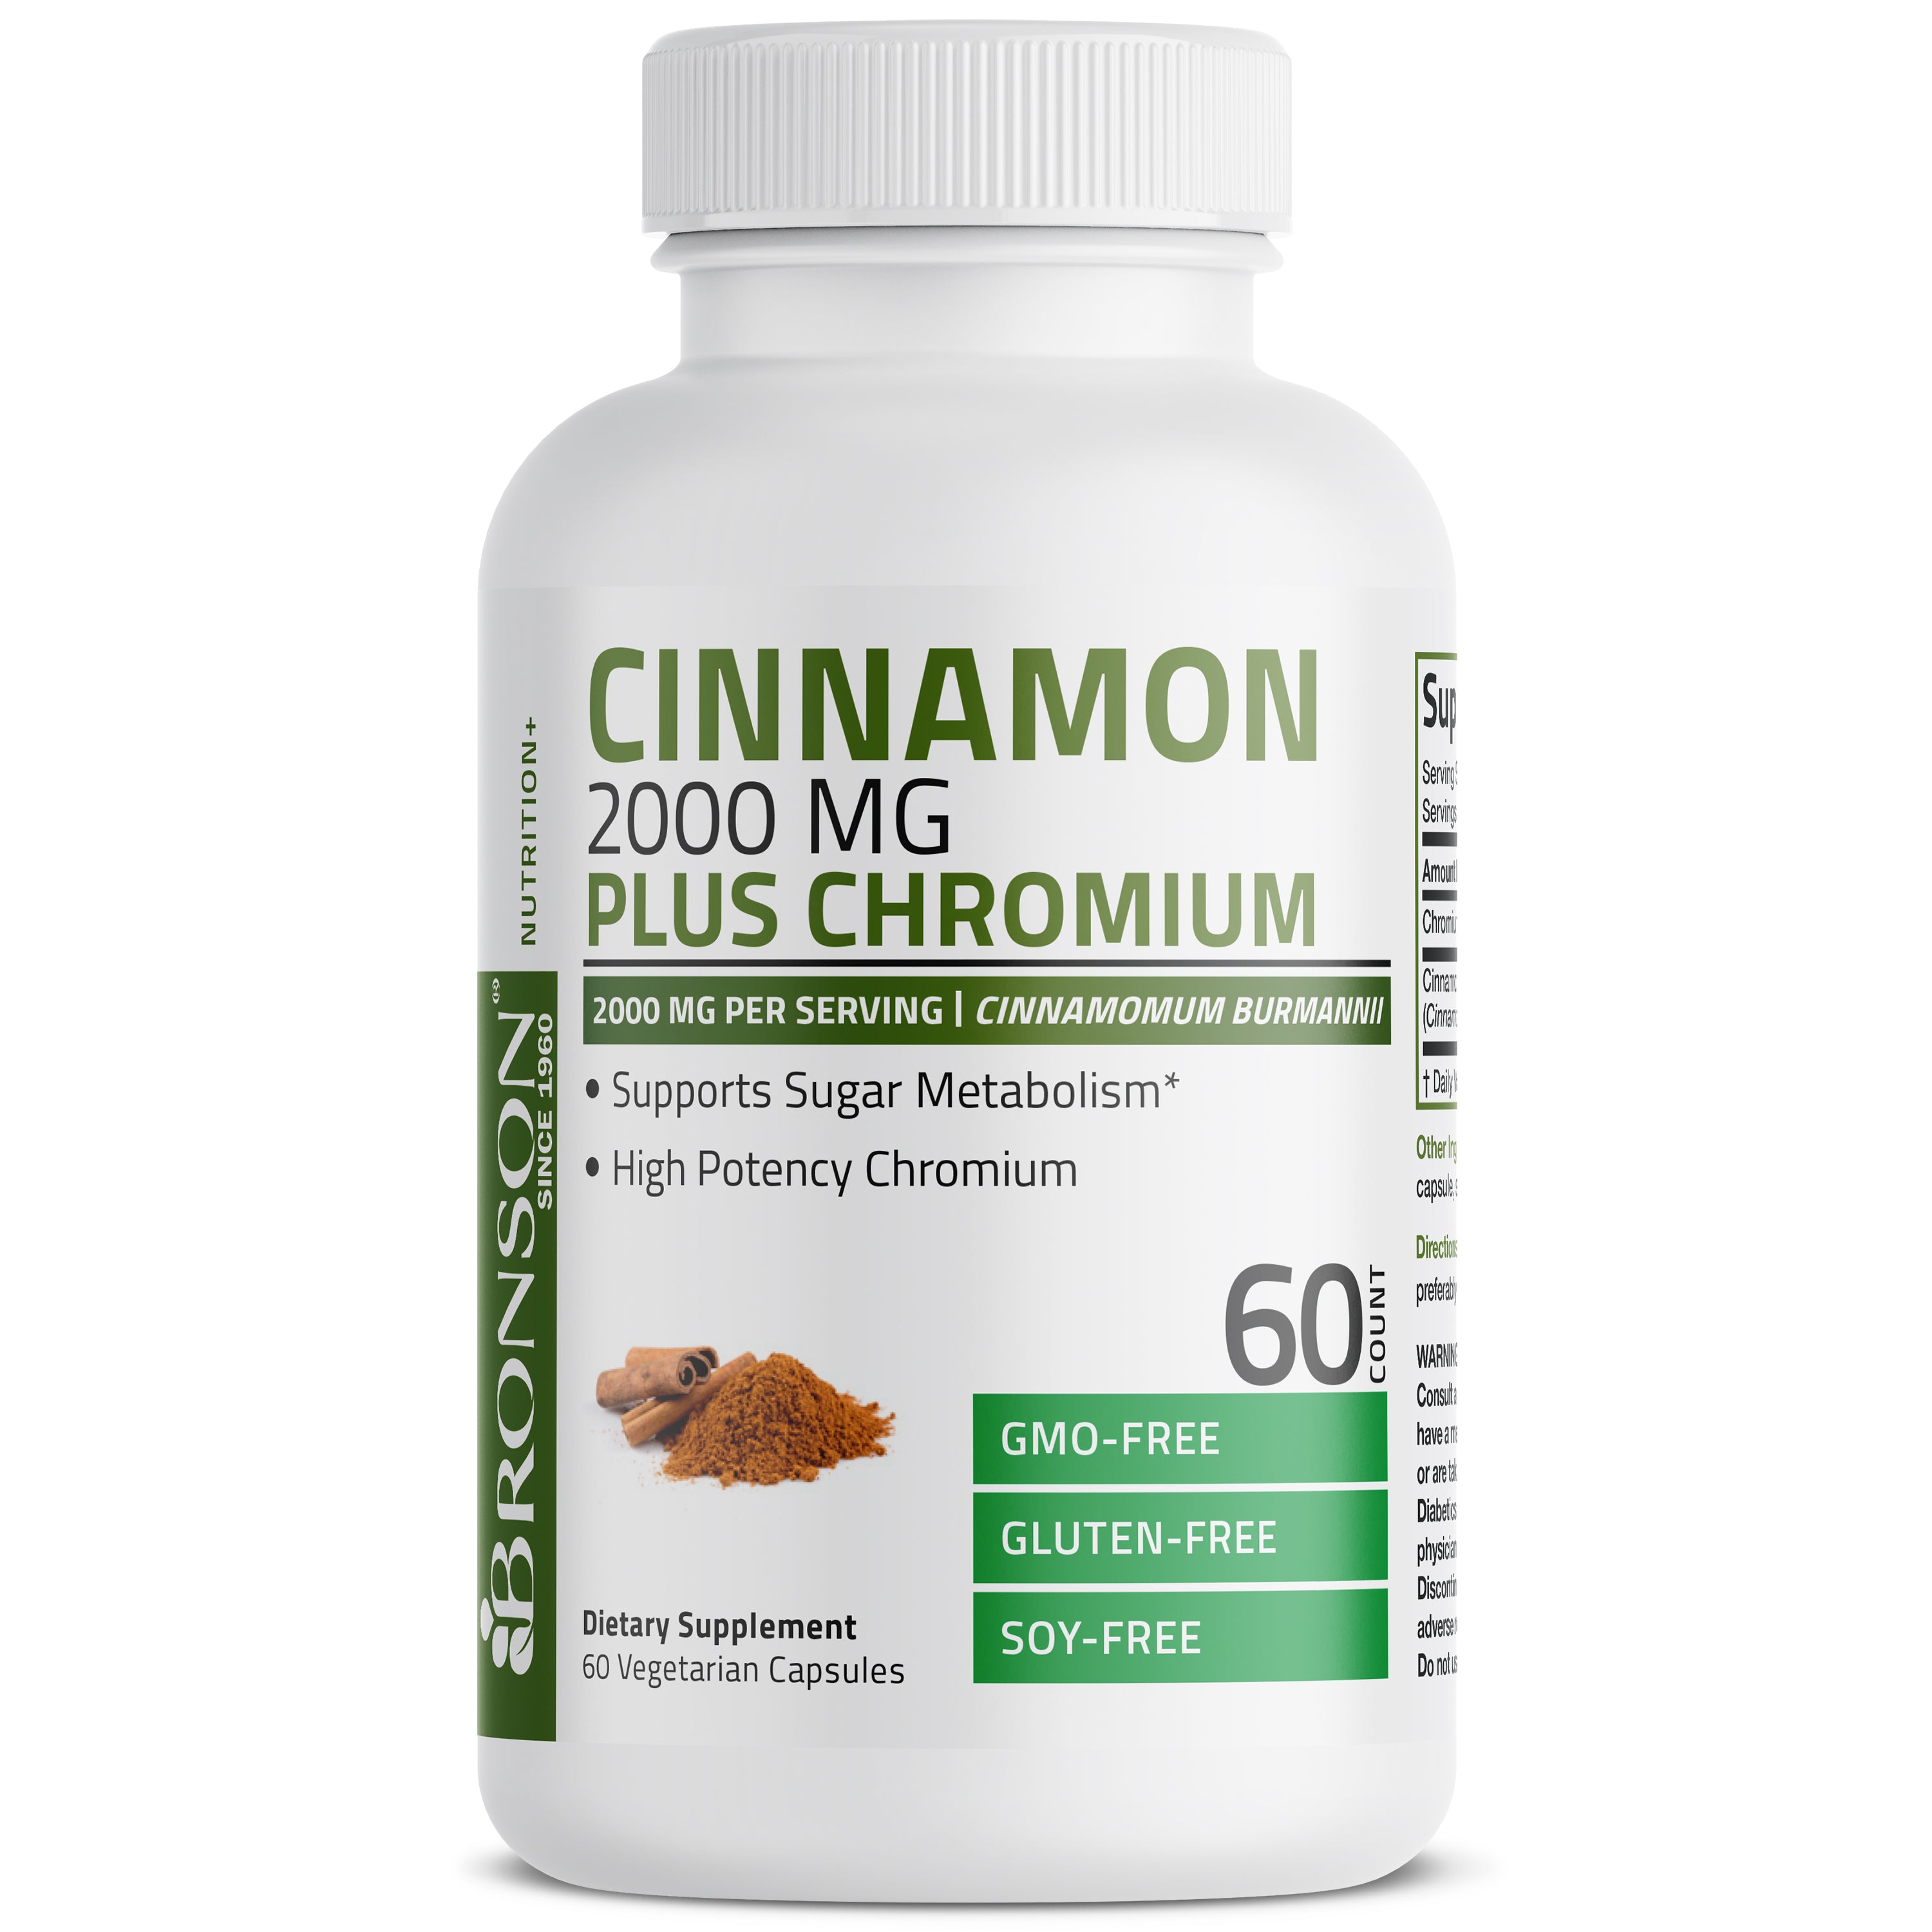 Cinnamon 2000 MG per Serving Plus Chromium